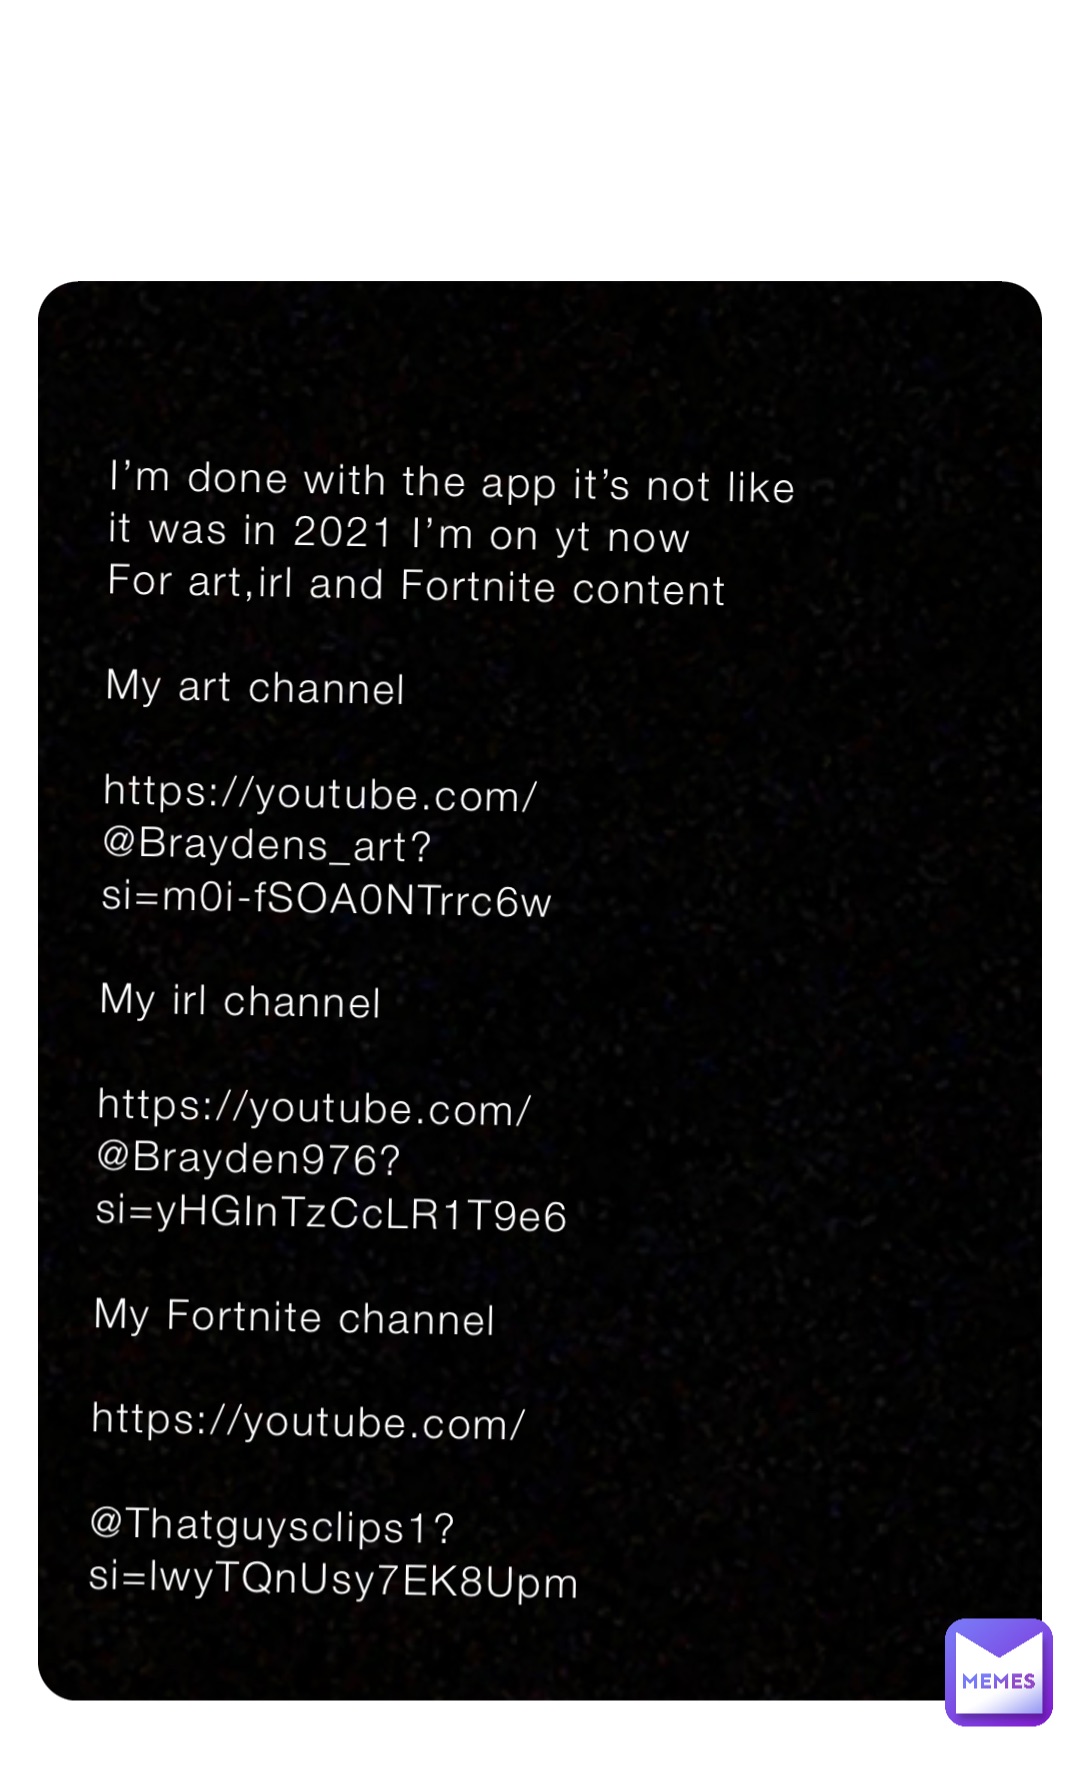 I’m done with the app it’s not like it was in 2021 I’m on yt now 
For art,irl and Fortnite content 

My art channel 

https://youtube.com/@Braydens_art?
si=m0i-fSOA0NTrrc6w

My irl channel

https://youtube.com/@Brayden976?si=yHGInTzCcLR1T9e6

My Fortnite channel 

https://youtube.com/

@Thatguysclips1?si=lwyTQnUsy7EK8Upm